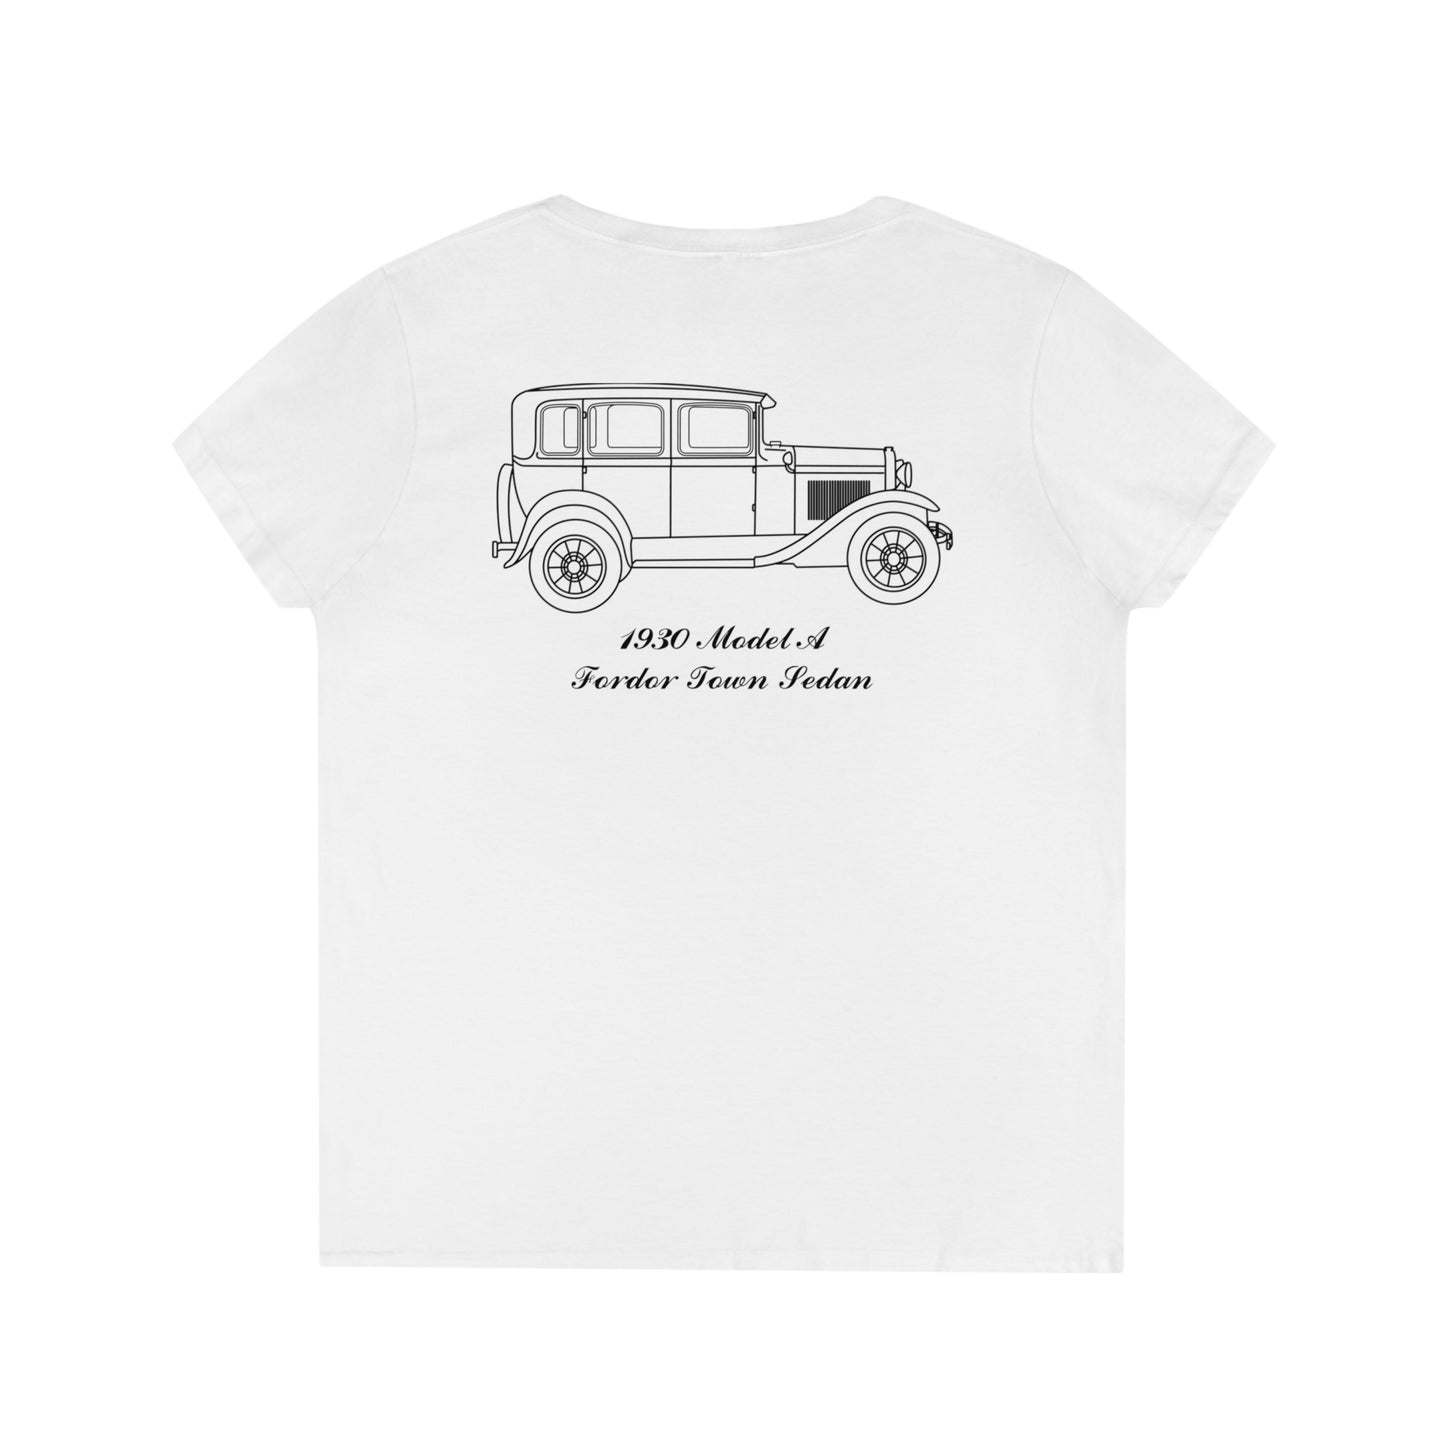 1930 Fordor Town Sedan Women's V-Neck Shirt